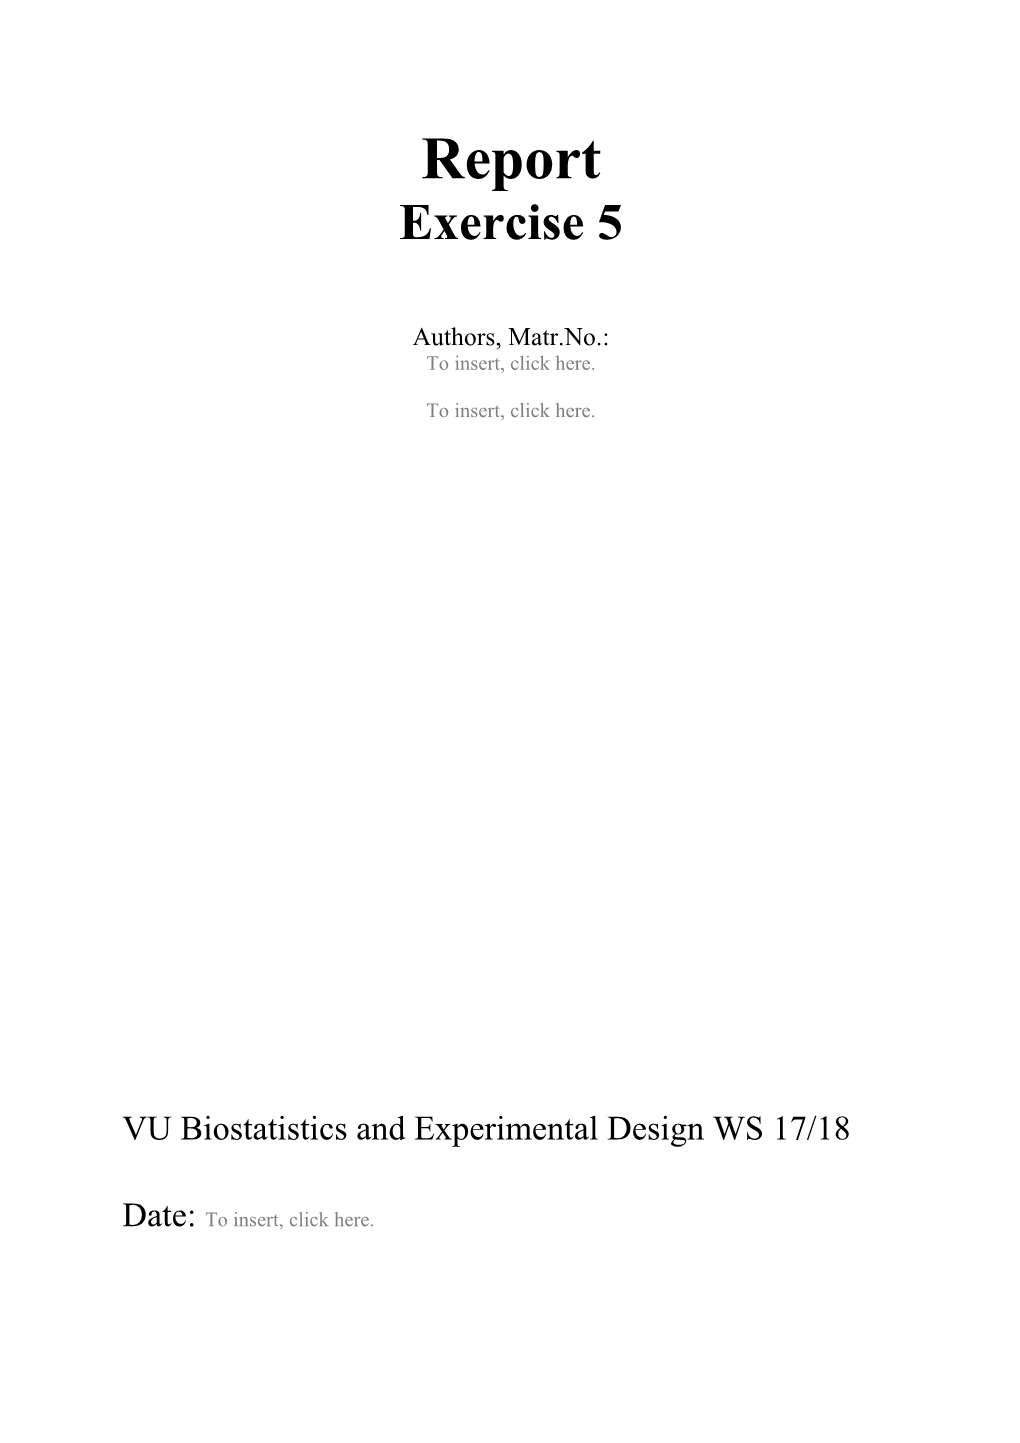 VU Biostatistics and Experimental Design WS 17/18